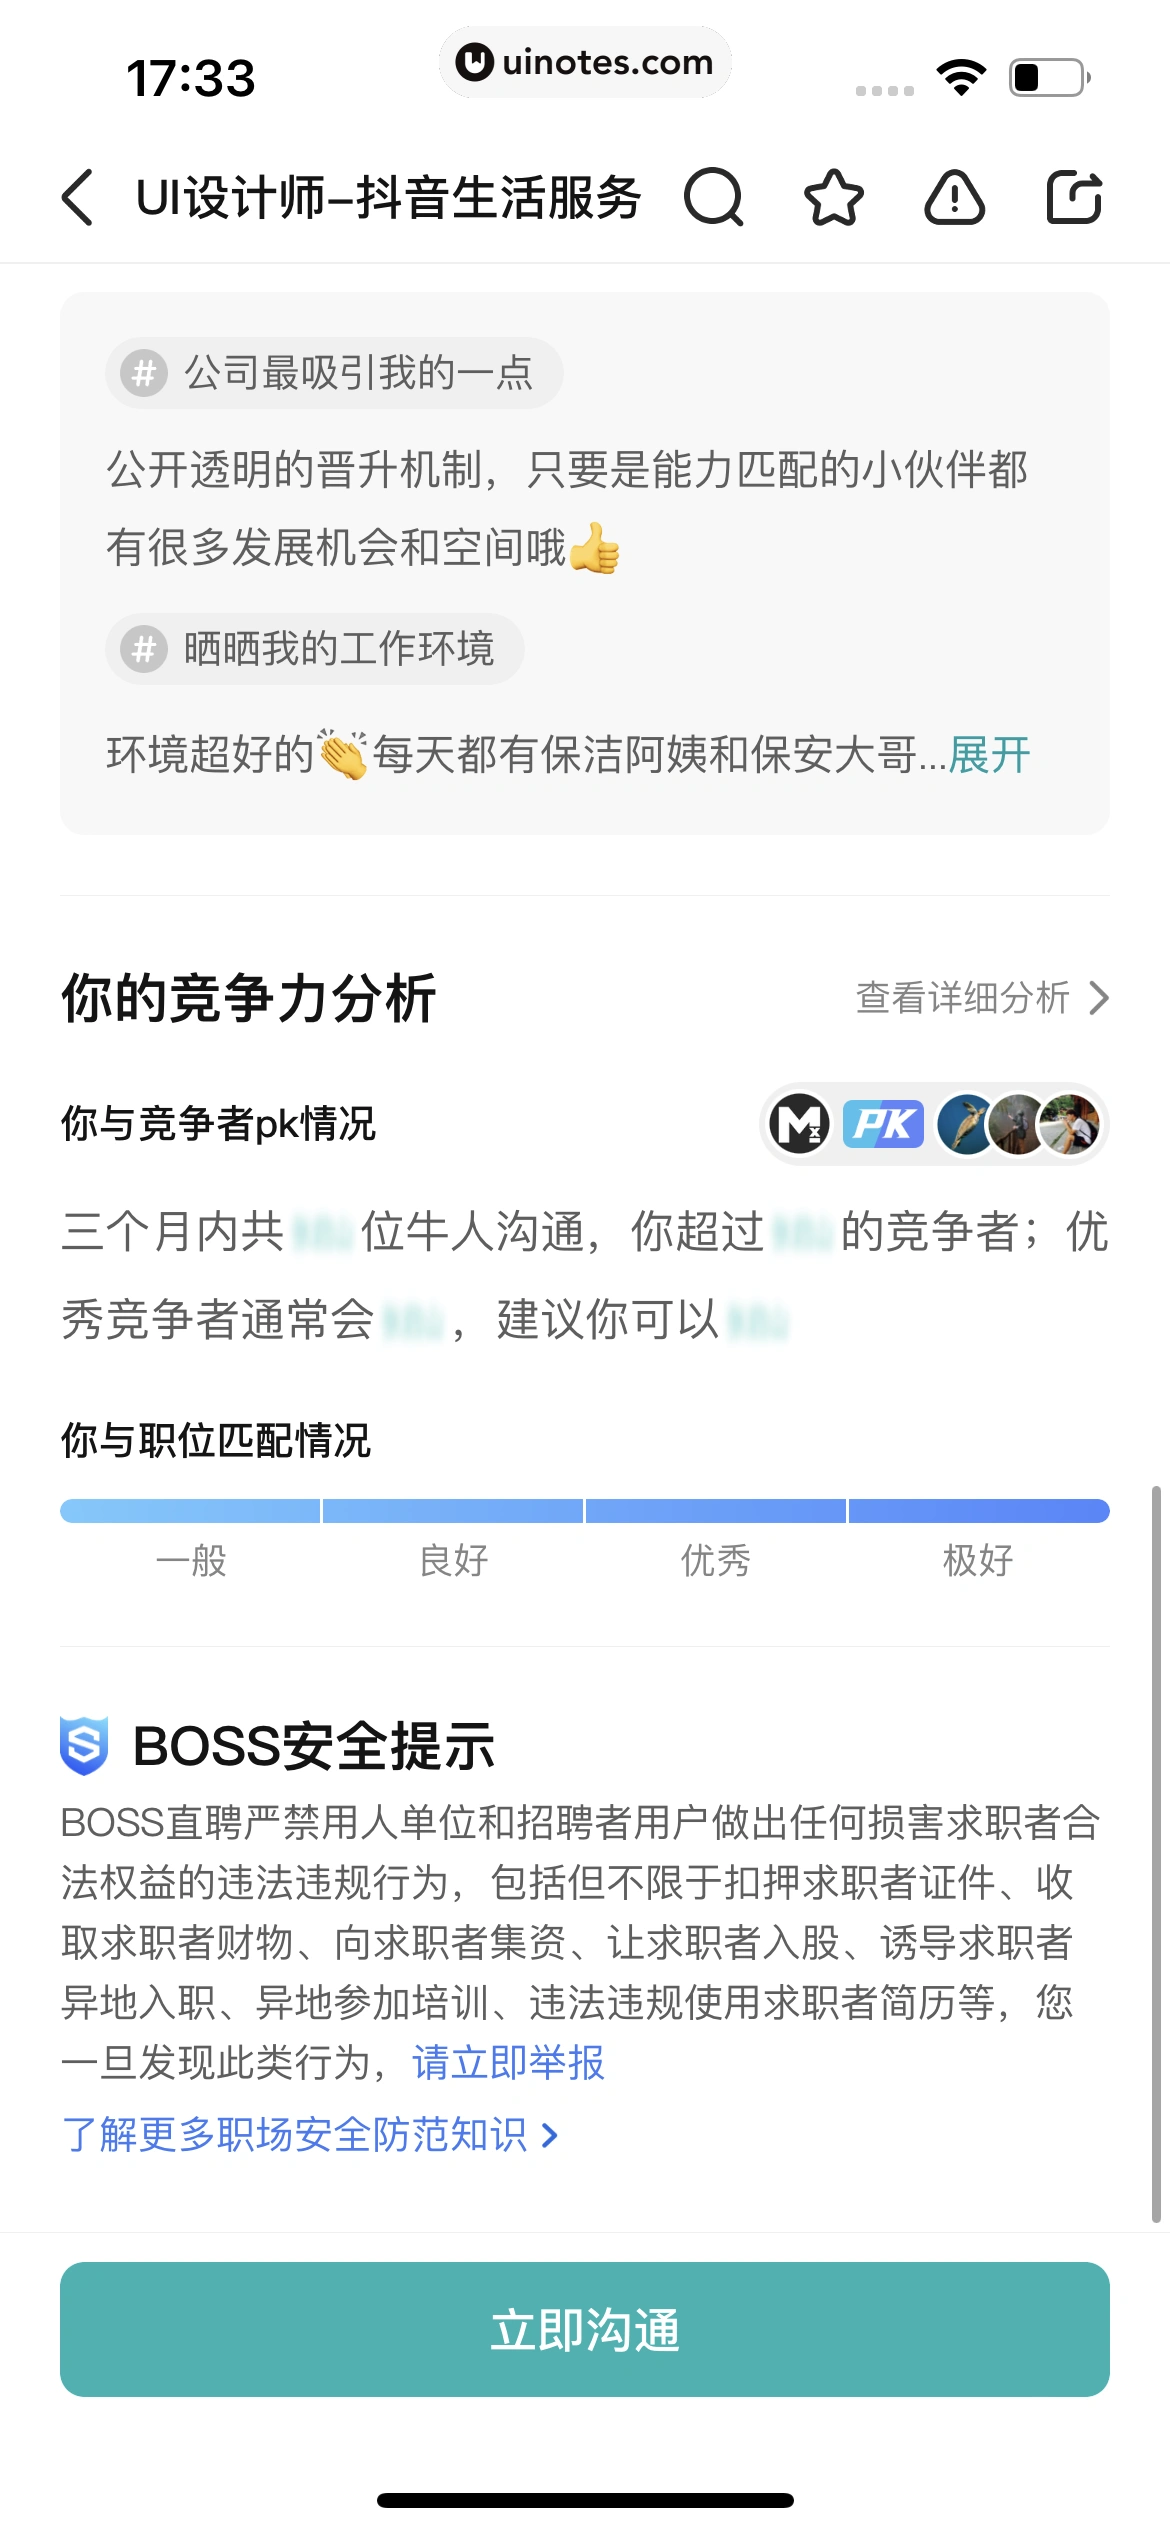 BOSS直聘 App 截图 061 - UI Notes